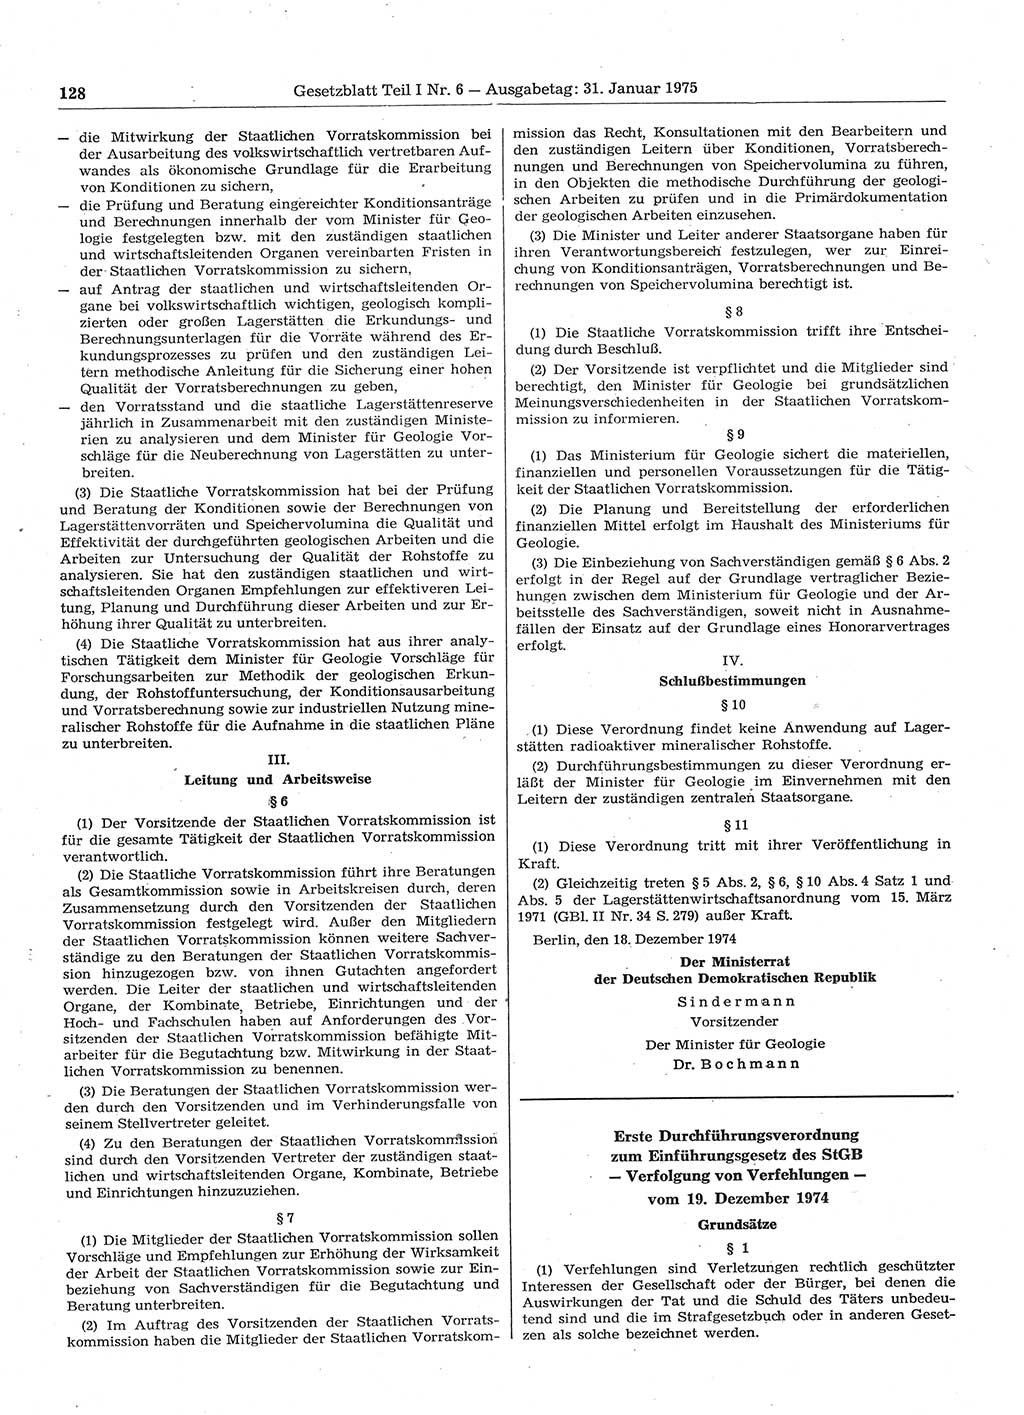 Gesetzblatt (GBl.) der Deutschen Demokratischen Republik (DDR) Teil Ⅰ 1975, Seite 128 (GBl. DDR Ⅰ 1975, S. 128)